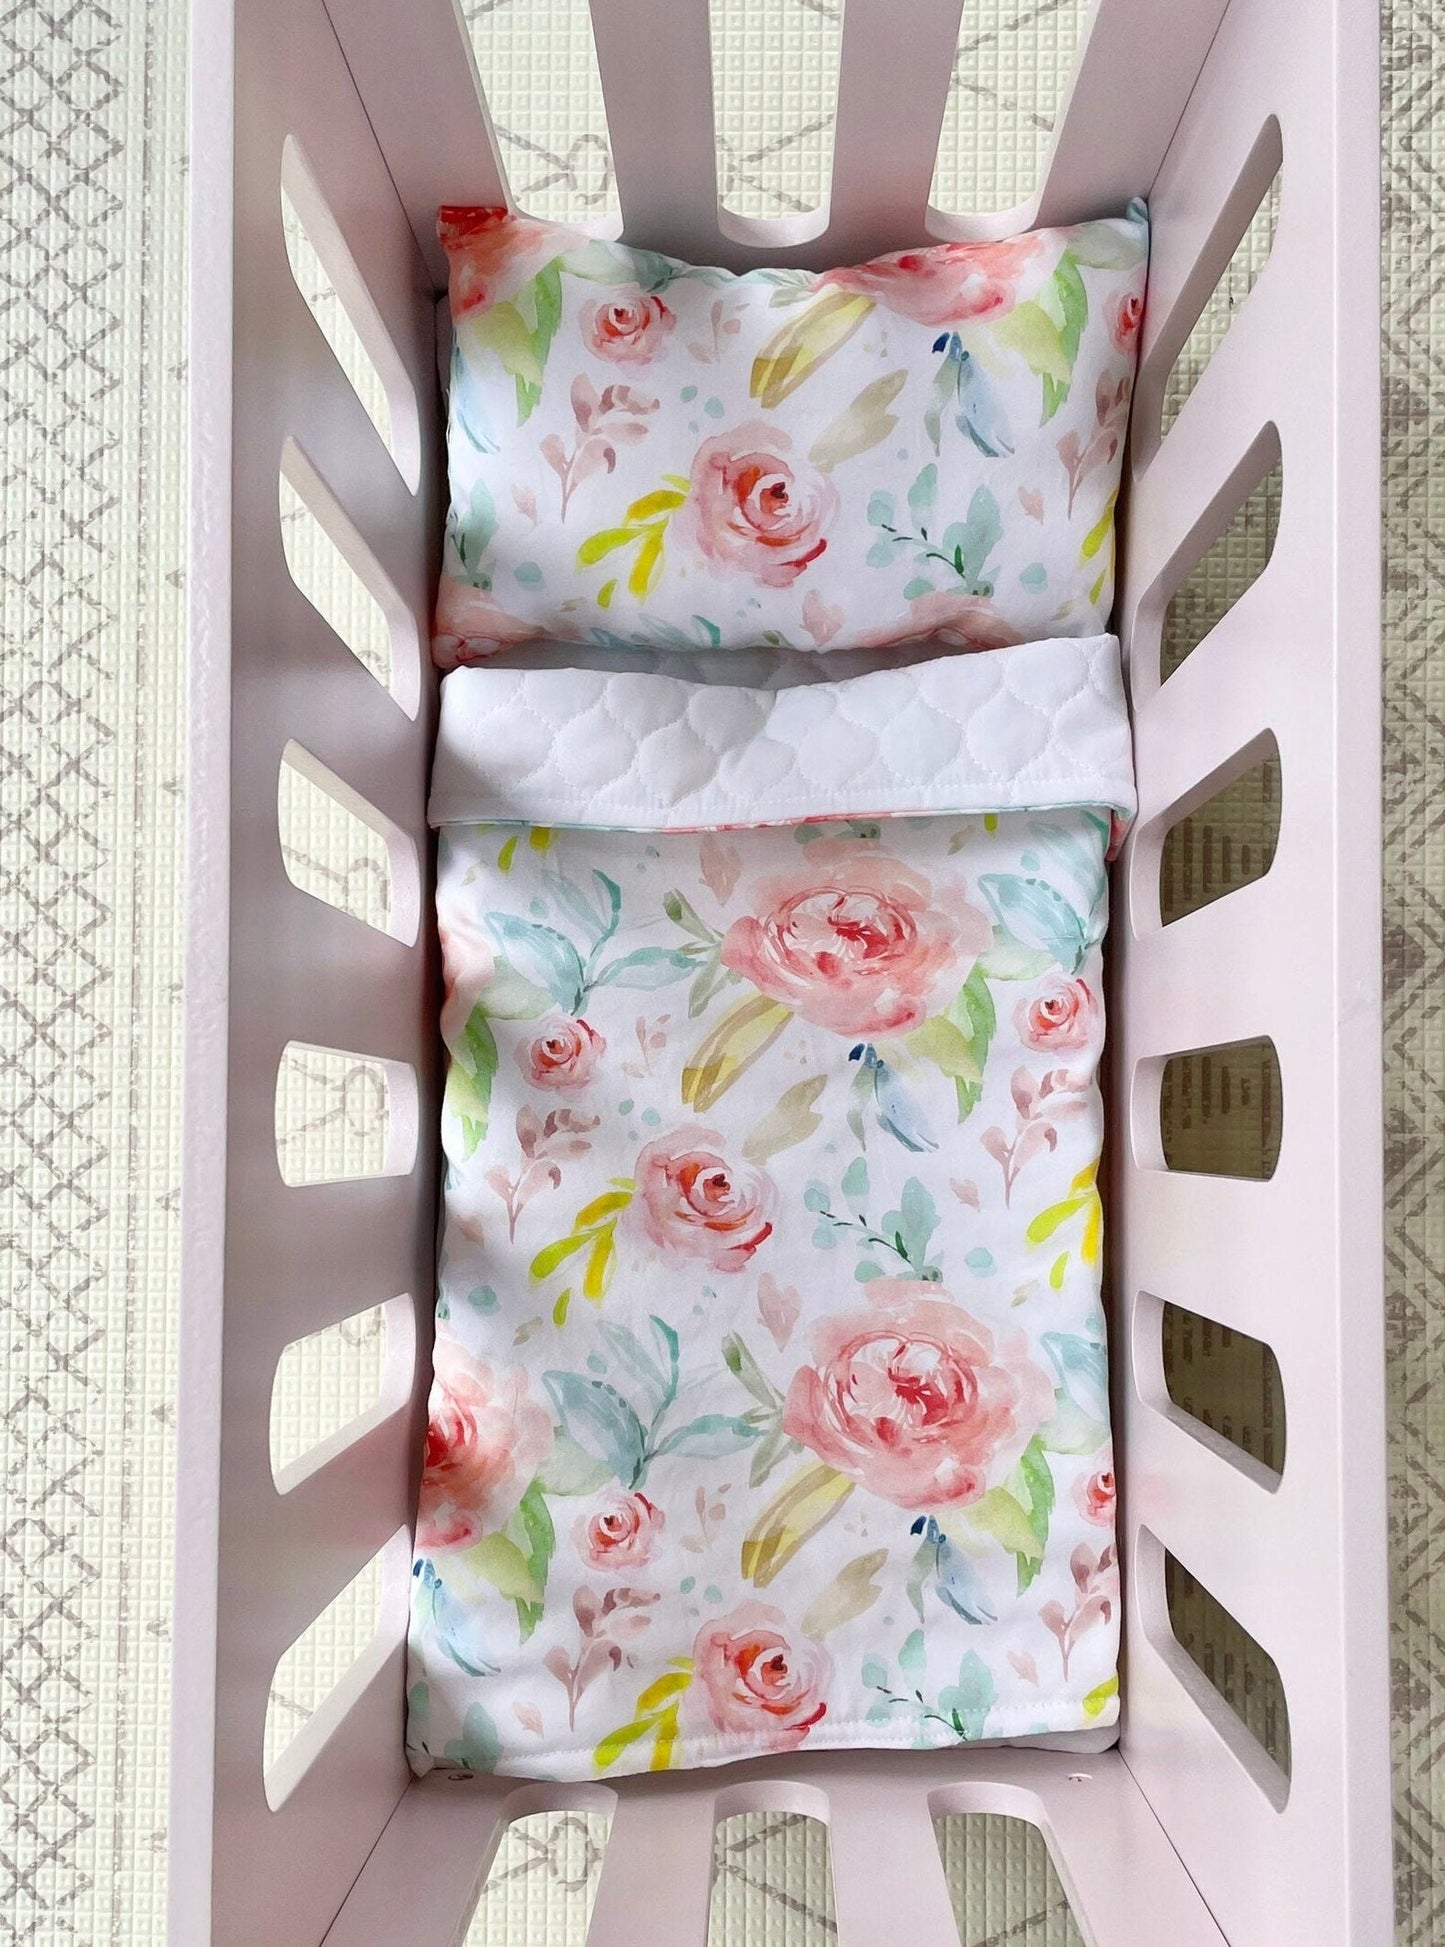 Dolls Blanket Bright Floral Bedding - bed cot quilt